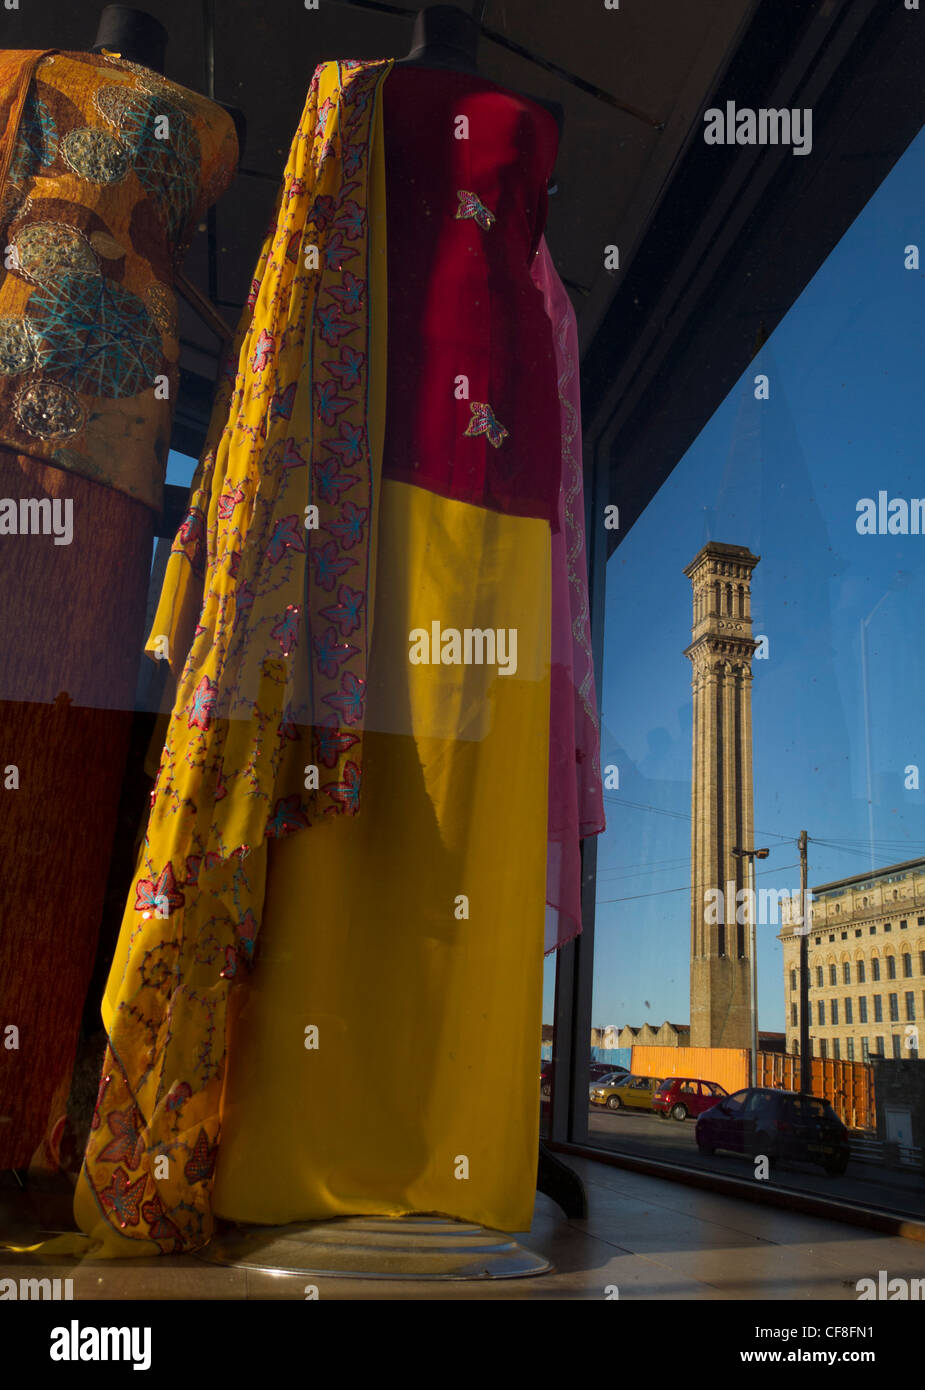 Listers Mill camino visto attraverso la finestra di Awan tessili, sari in vetrina del negozio. Foto Stock